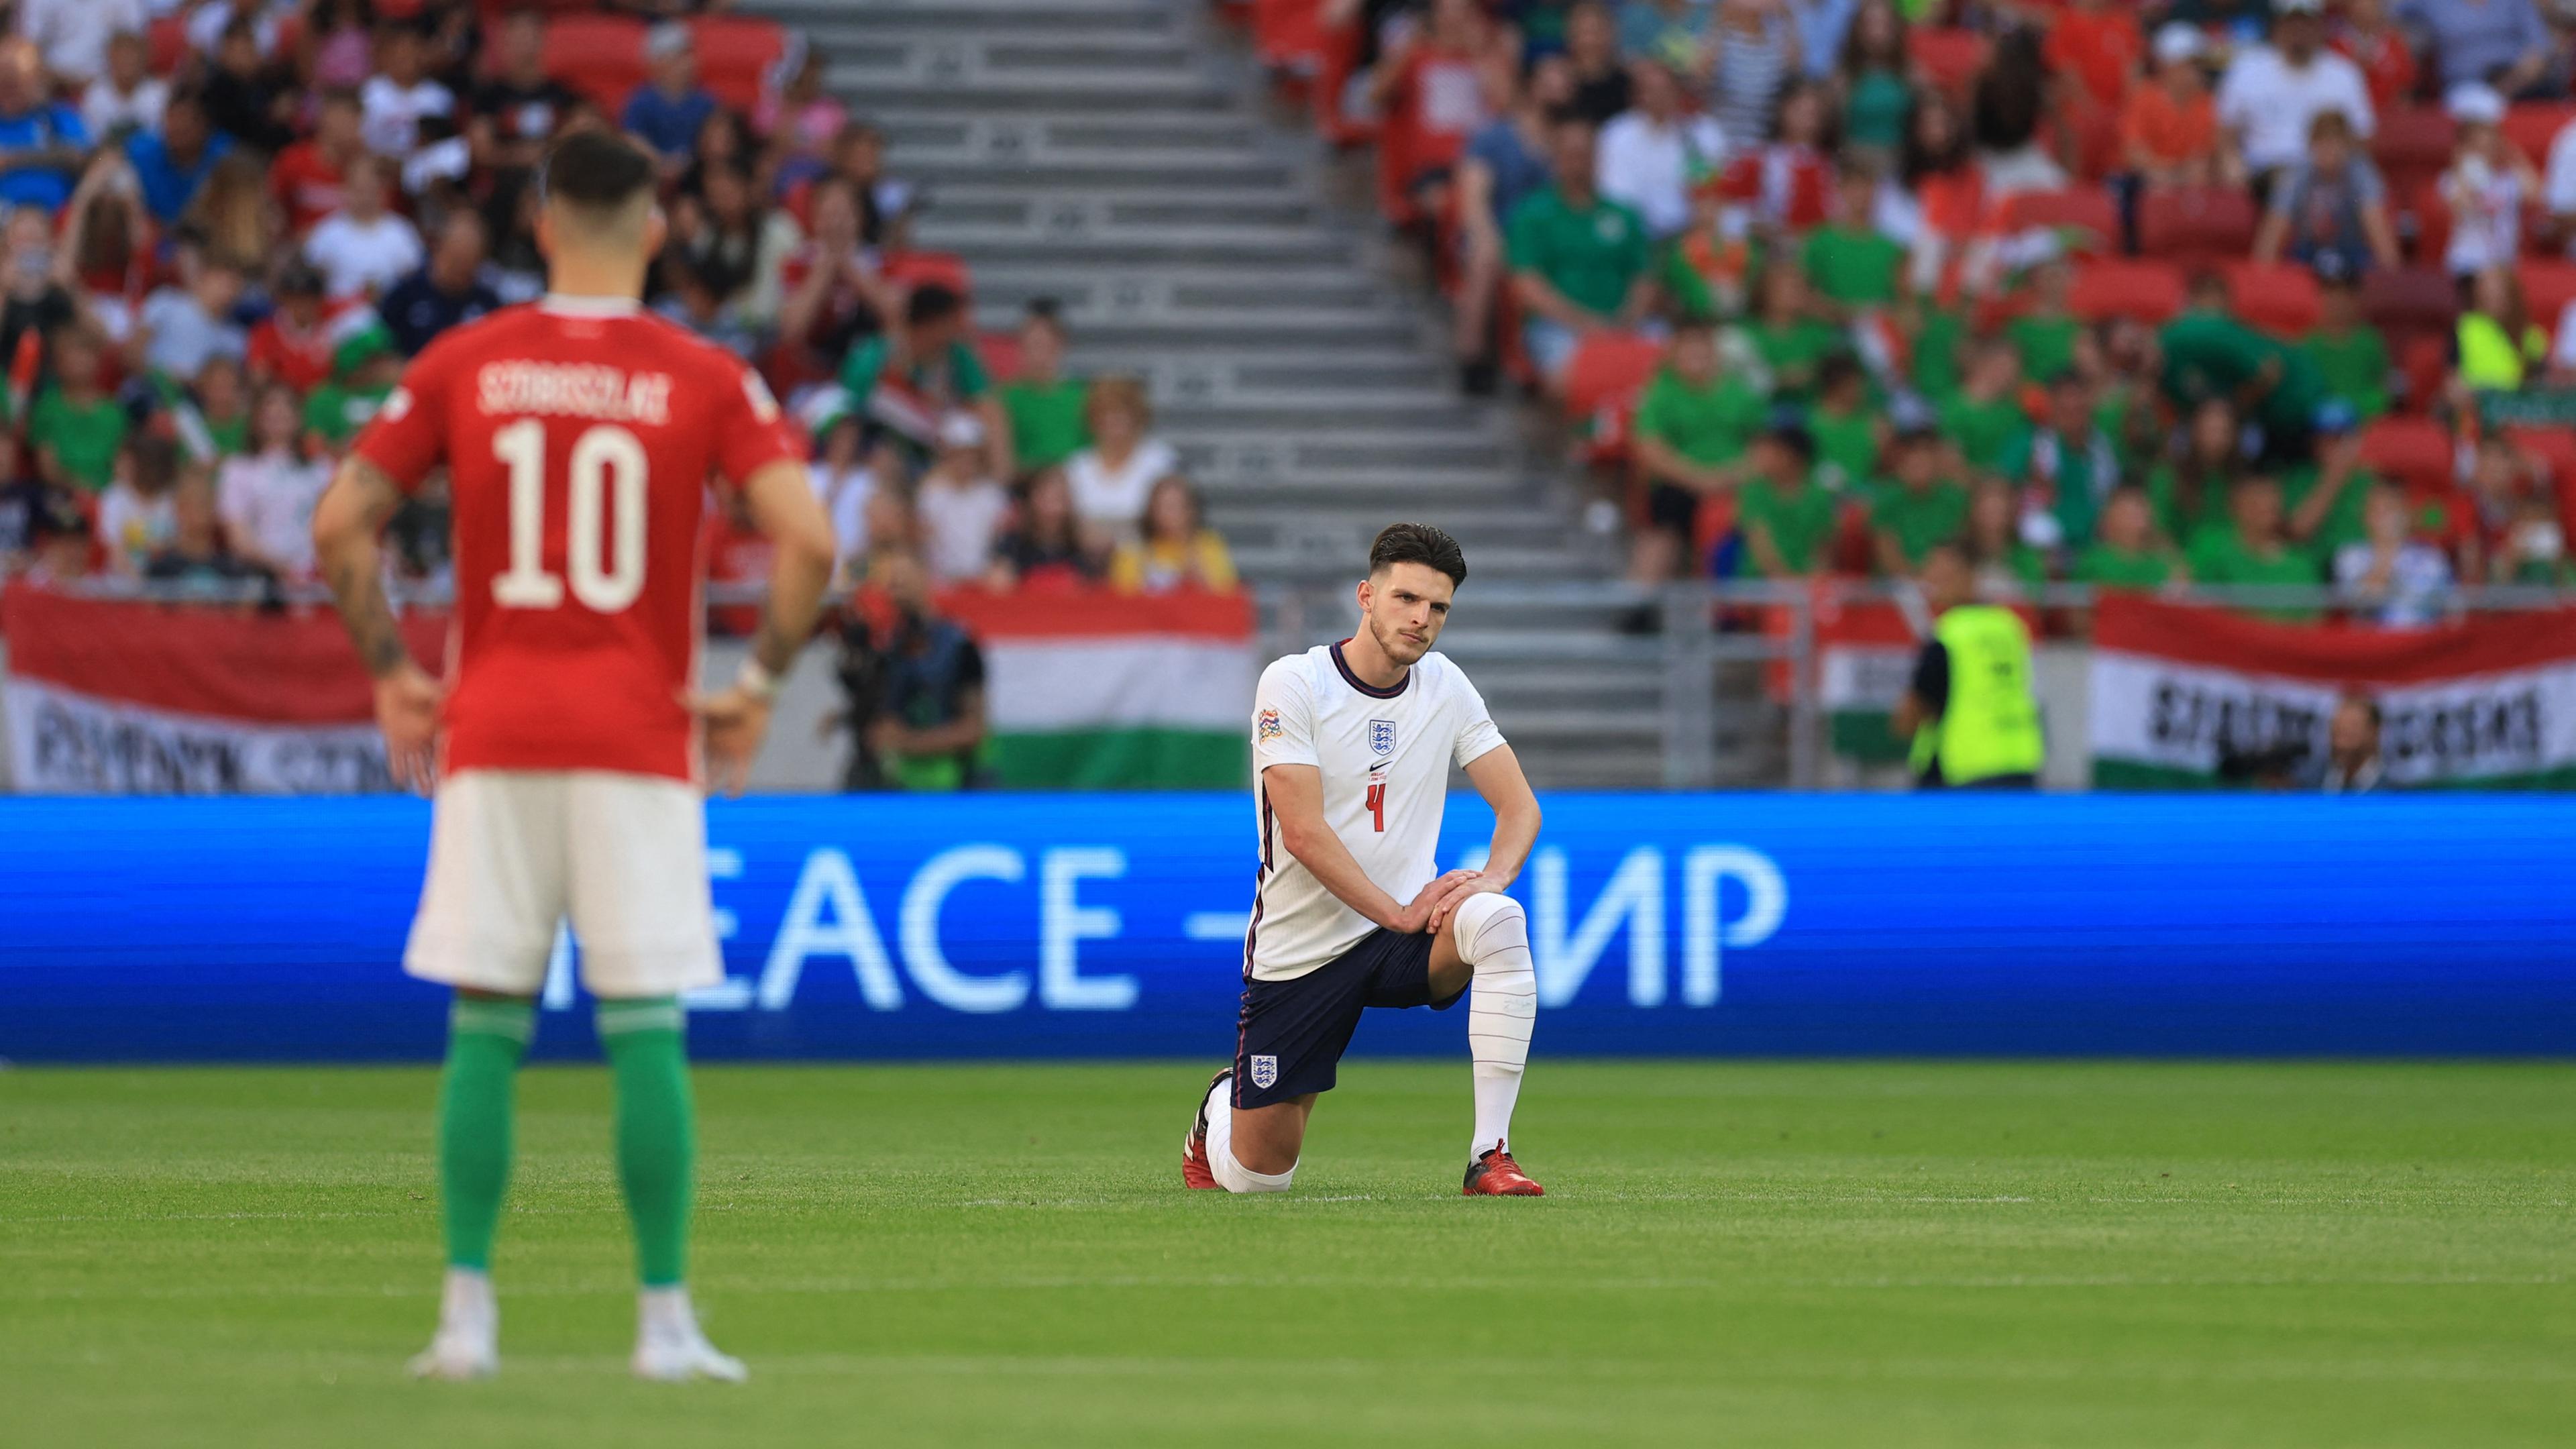 Der britische Fußballspieler Declan Rice kniet auf dem Rasen während eines Spiels gegen Ungarn.